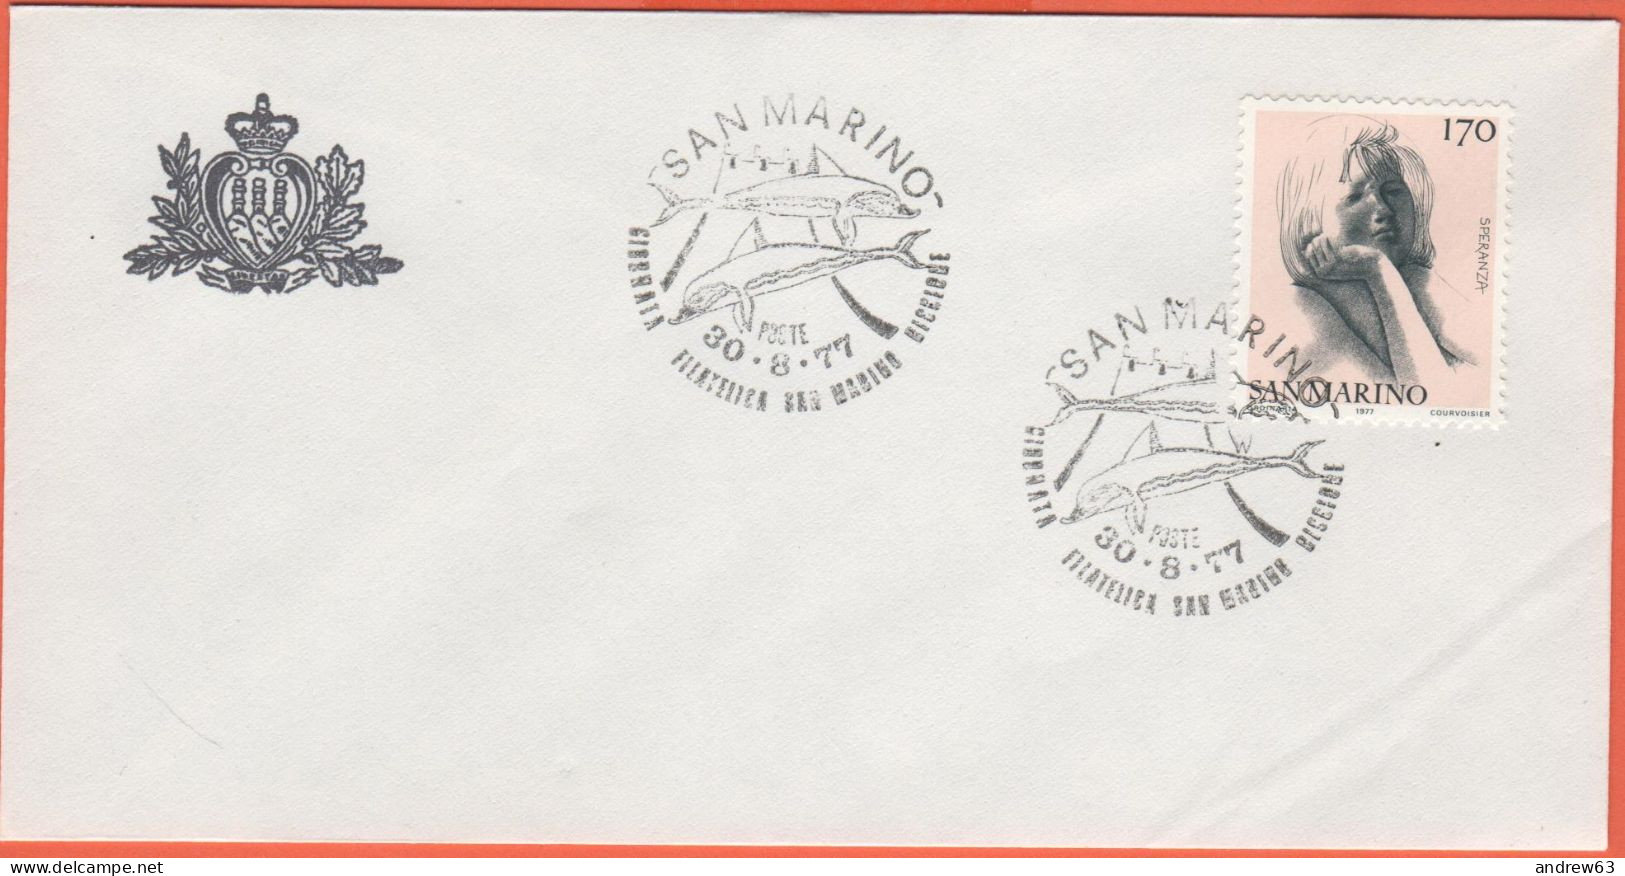 SAN MARINO - 1977 - 170 Le Virtù Civili-Speranza + Annullo Giornata Filatelica San Marino-Riccione Del 30/08/77 - Uffici - Briefe U. Dokumente